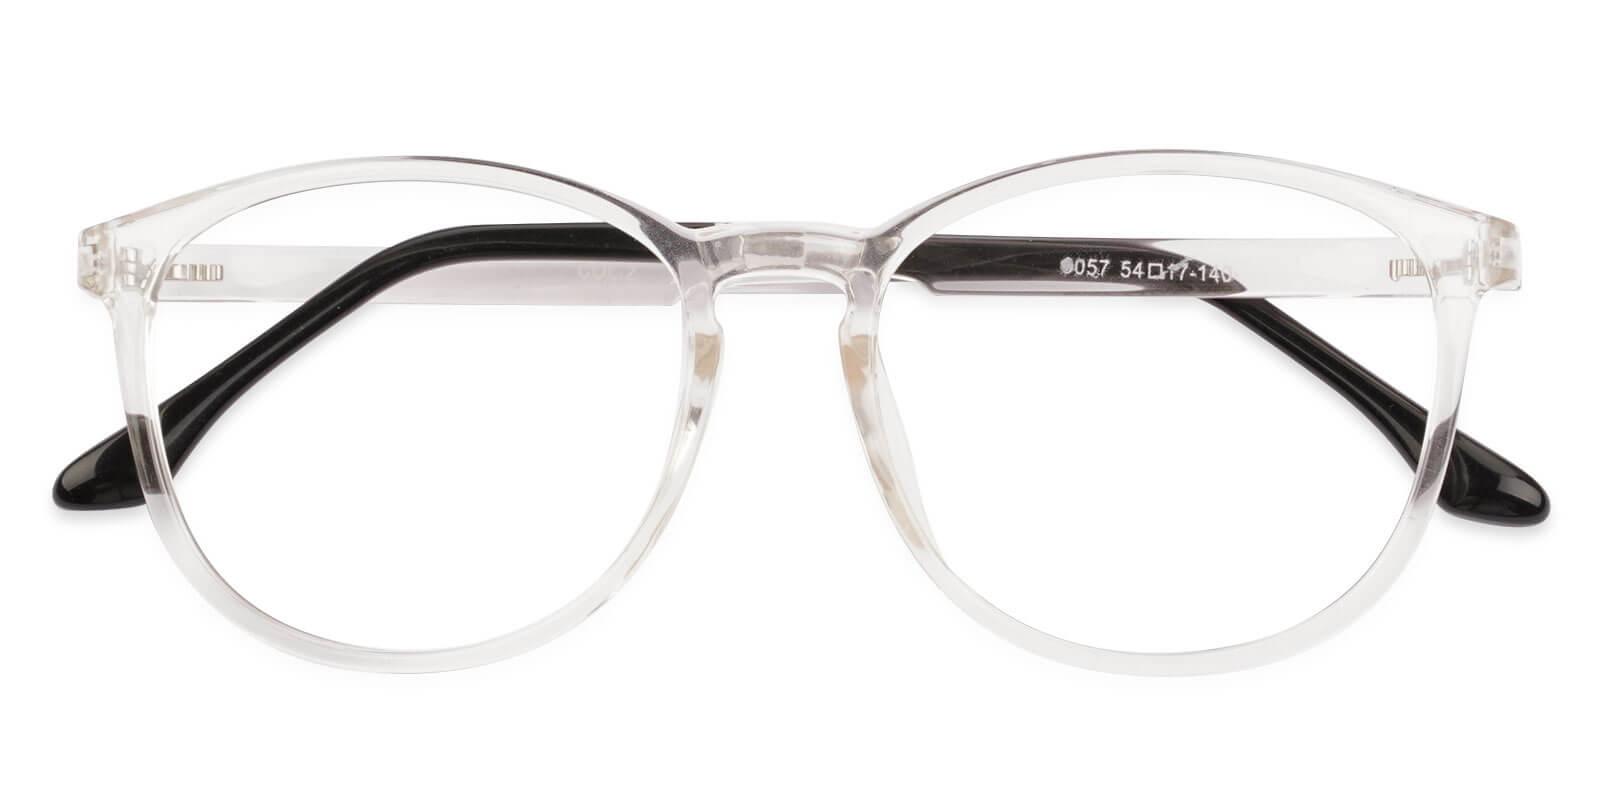 Hailey Fclear TR Eyeglasses , UniversalBridgeFit Frames from ABBE Glasses